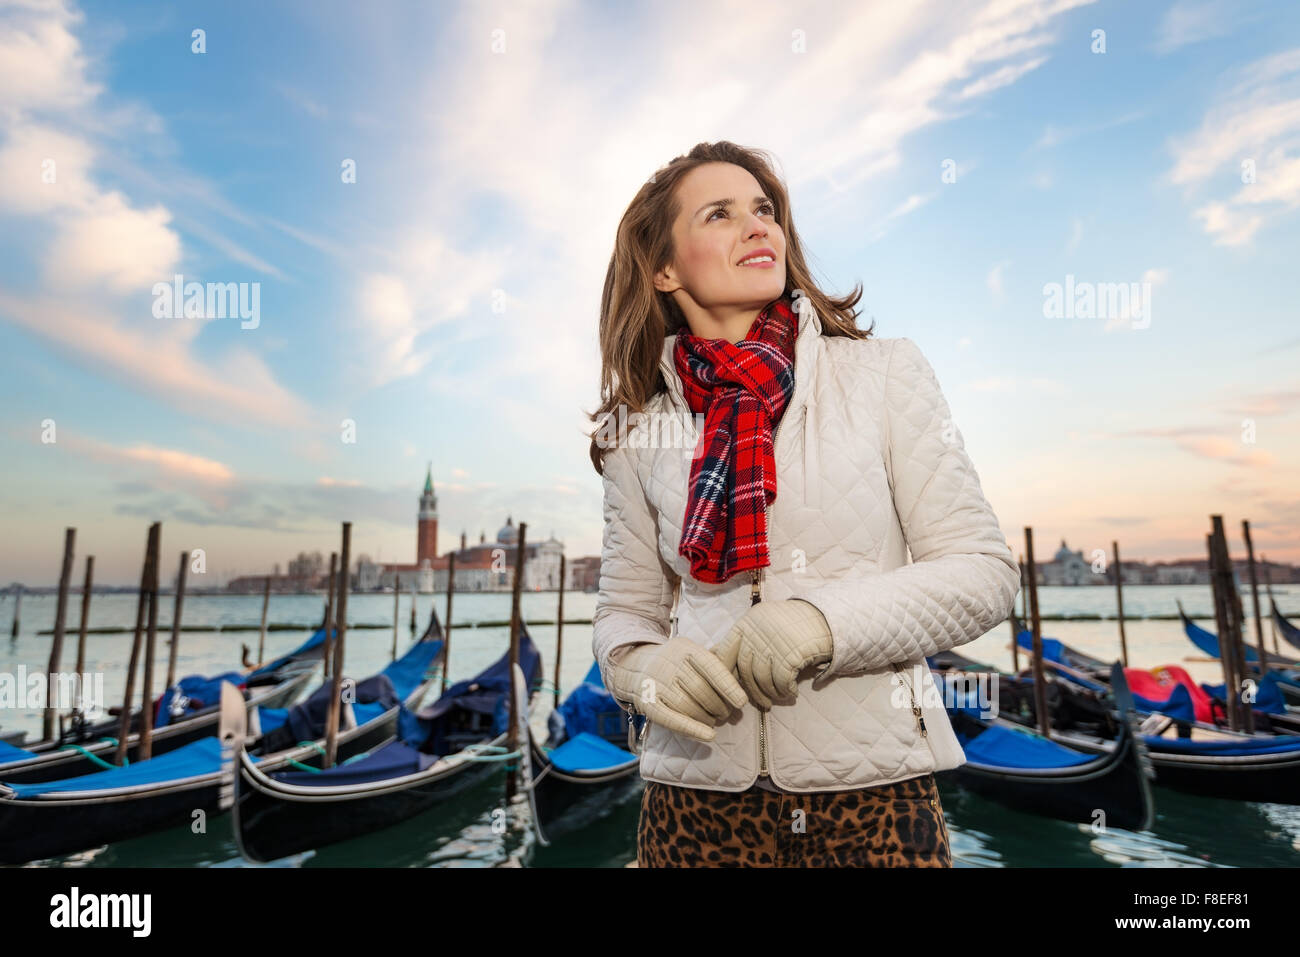 Sonnenuntergang bringt Leben unwiderstehlichen Zauber von Venedig - die einzigartige italienische Stadt. Verträumte junge Frau Reisenden steht am Ufer Stockfoto